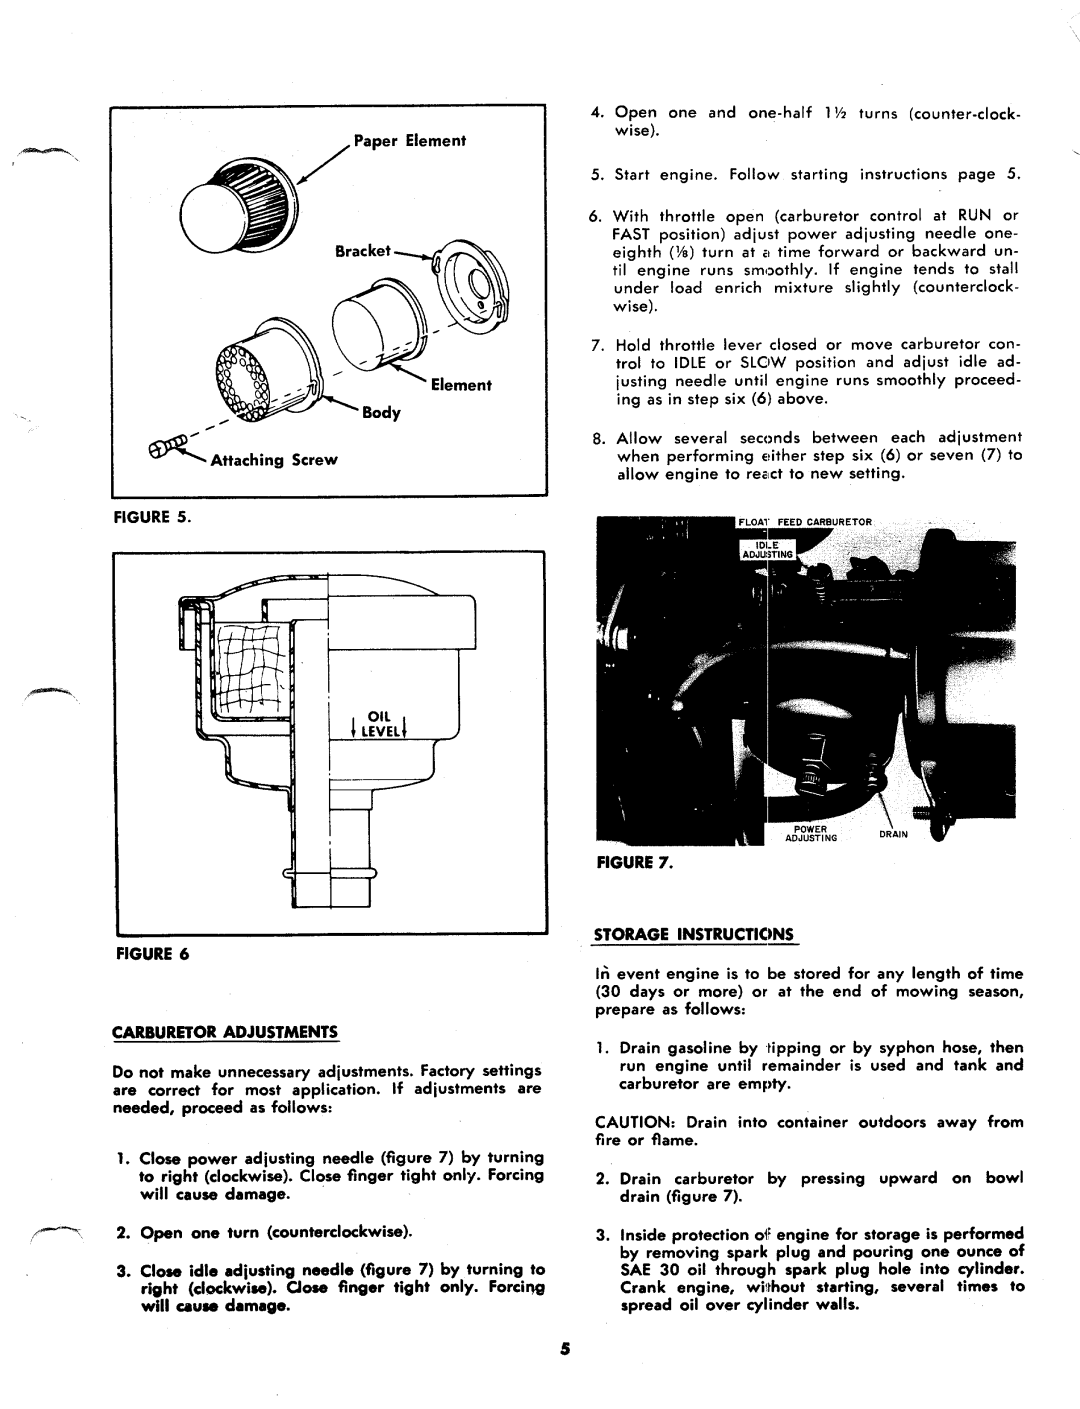 MTD 244-650A manual 